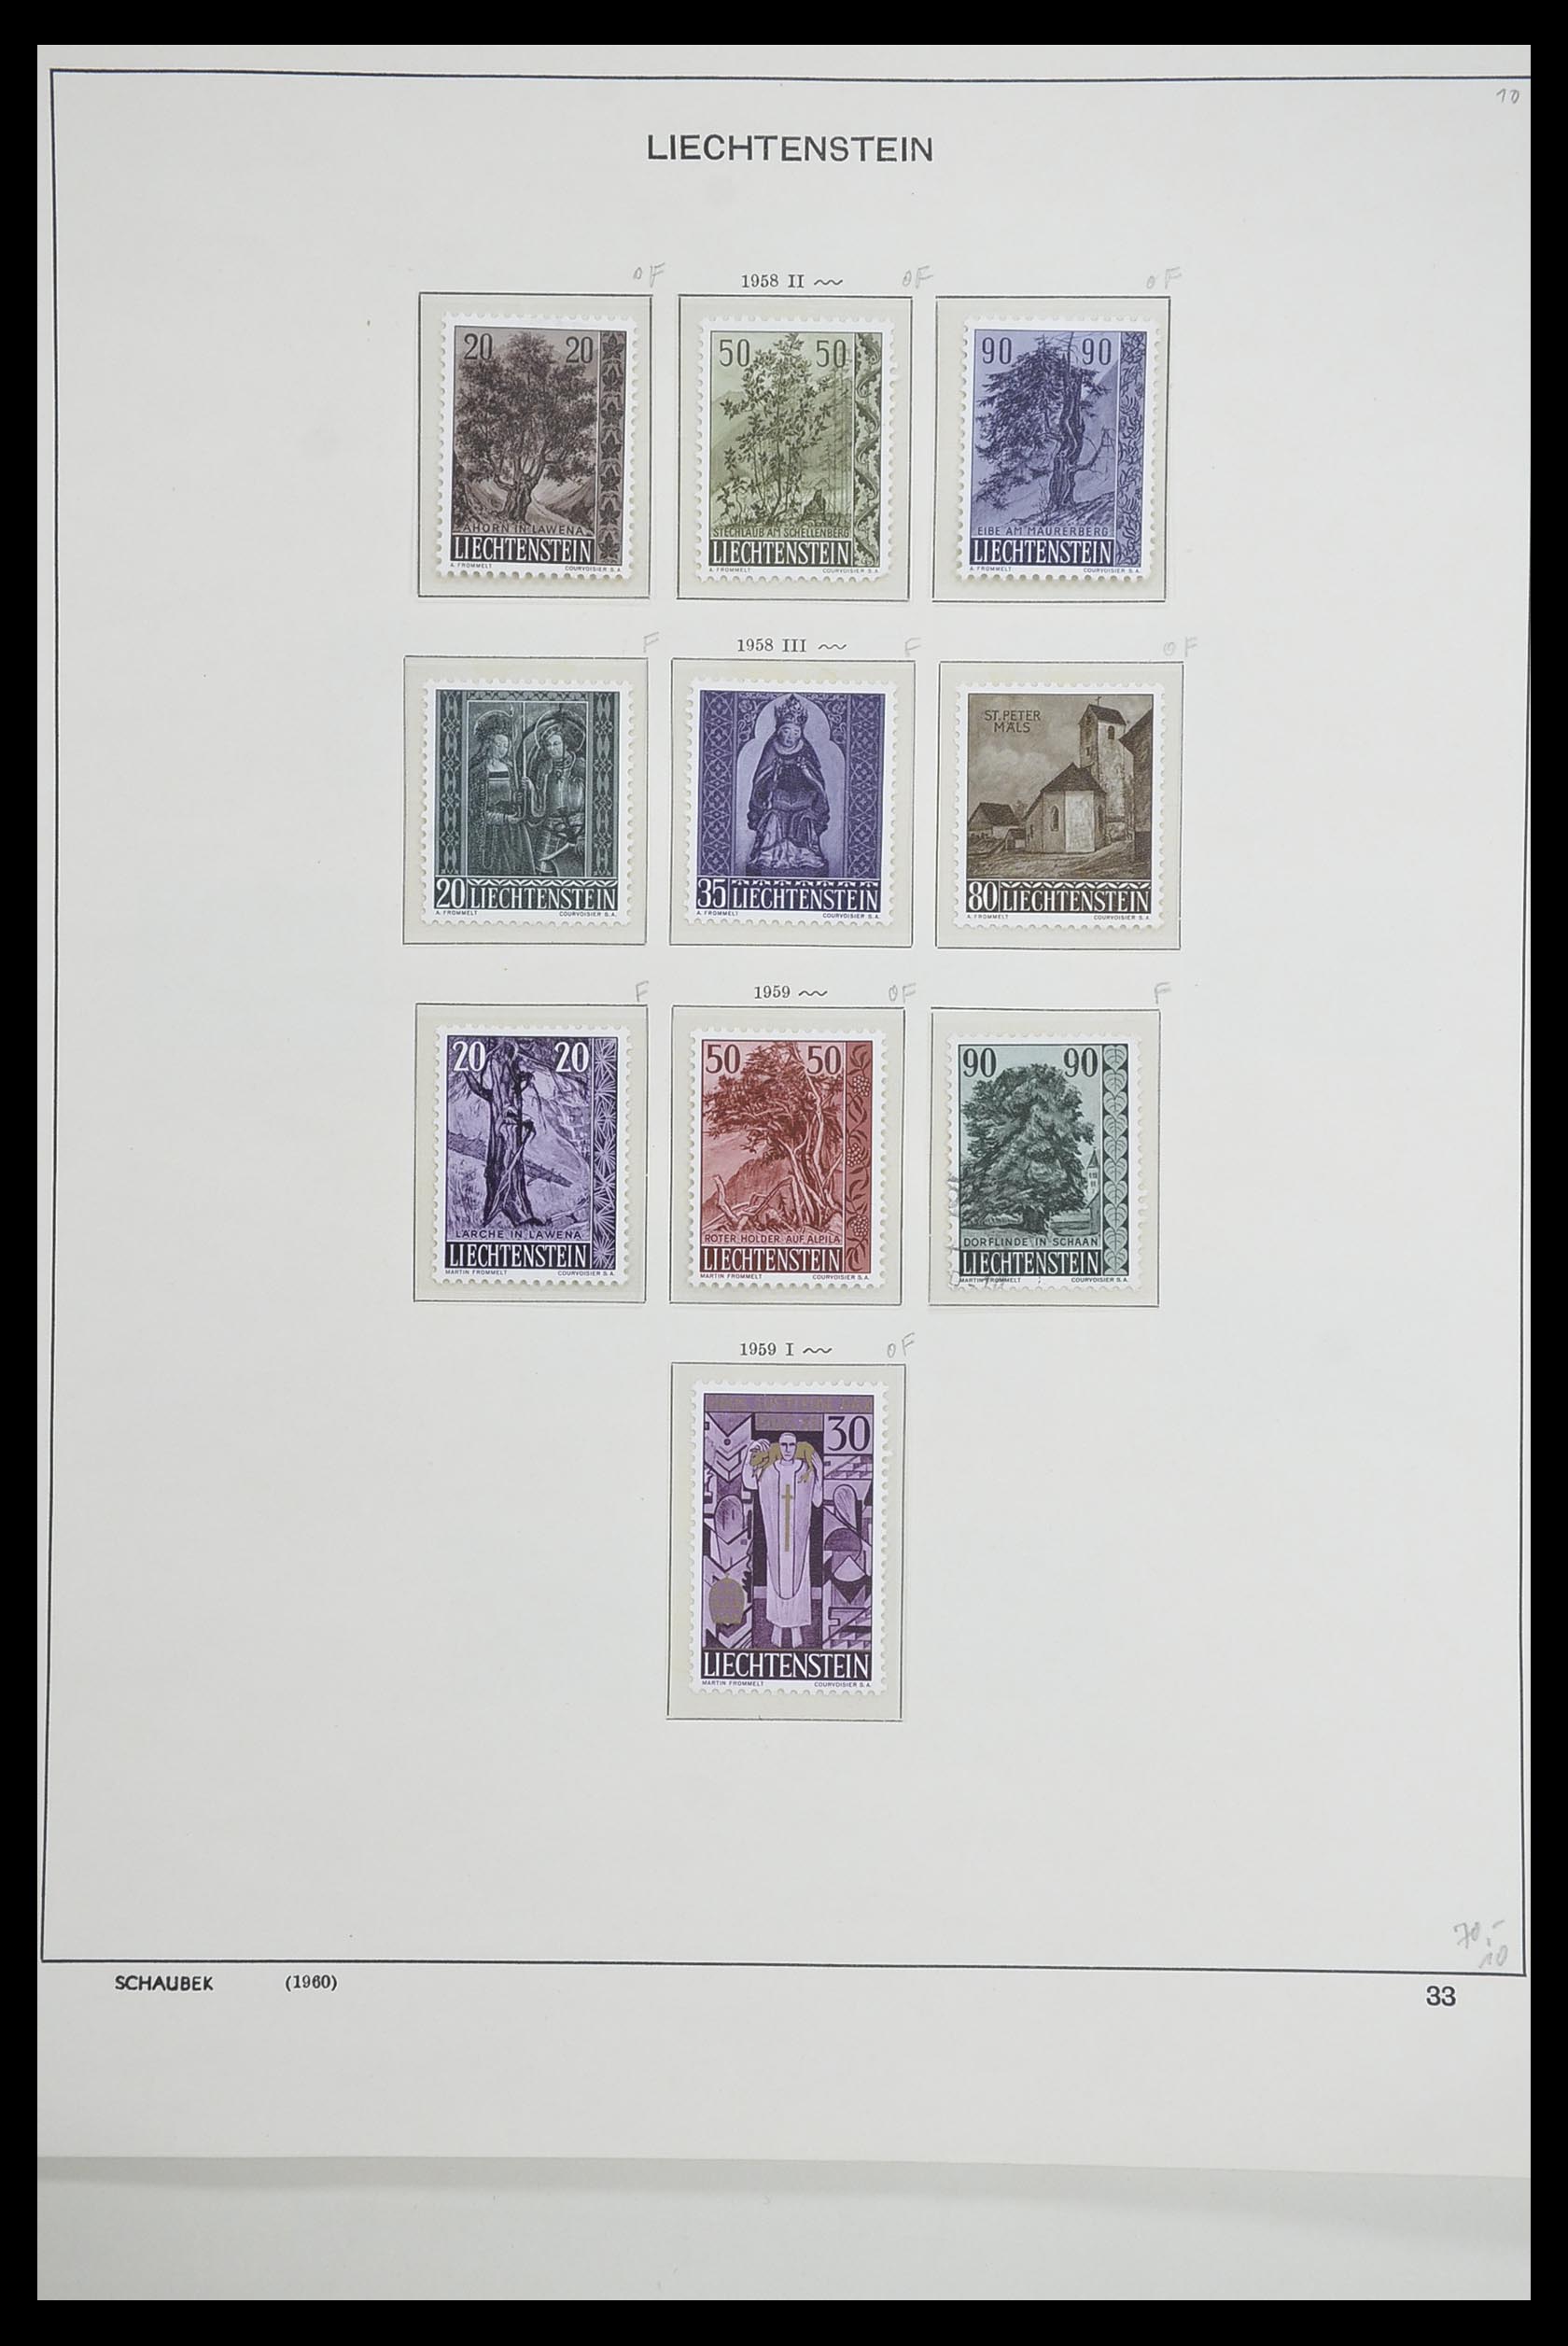 33274 034 - Postzegelverzameling 33274 Liechtenstein 1912-1996.